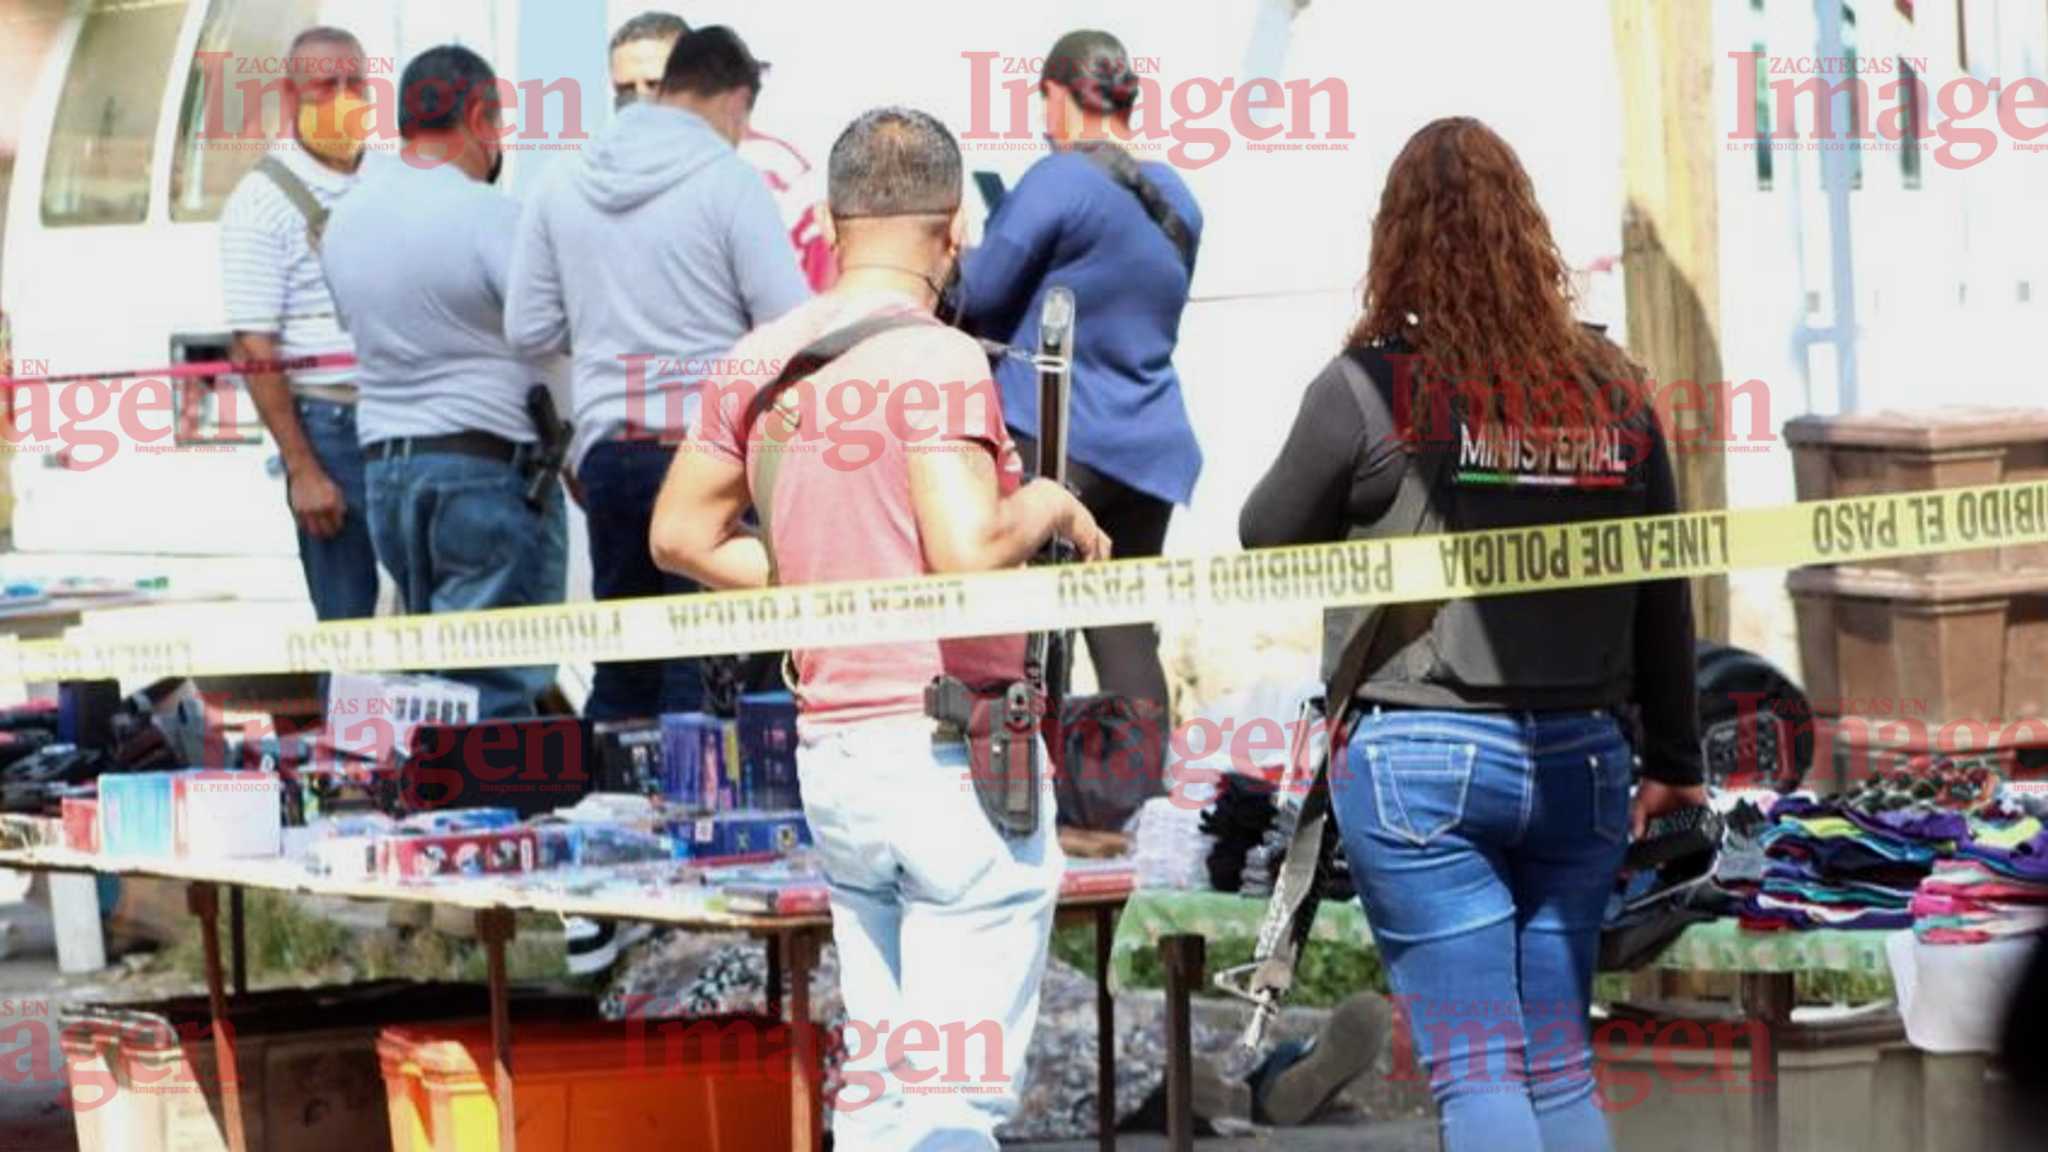 El cuerpo del comerciante quedó tirado en el suelo con al menos dos disparos en el cuerpo. | Foto: Imagen Zacatecas.